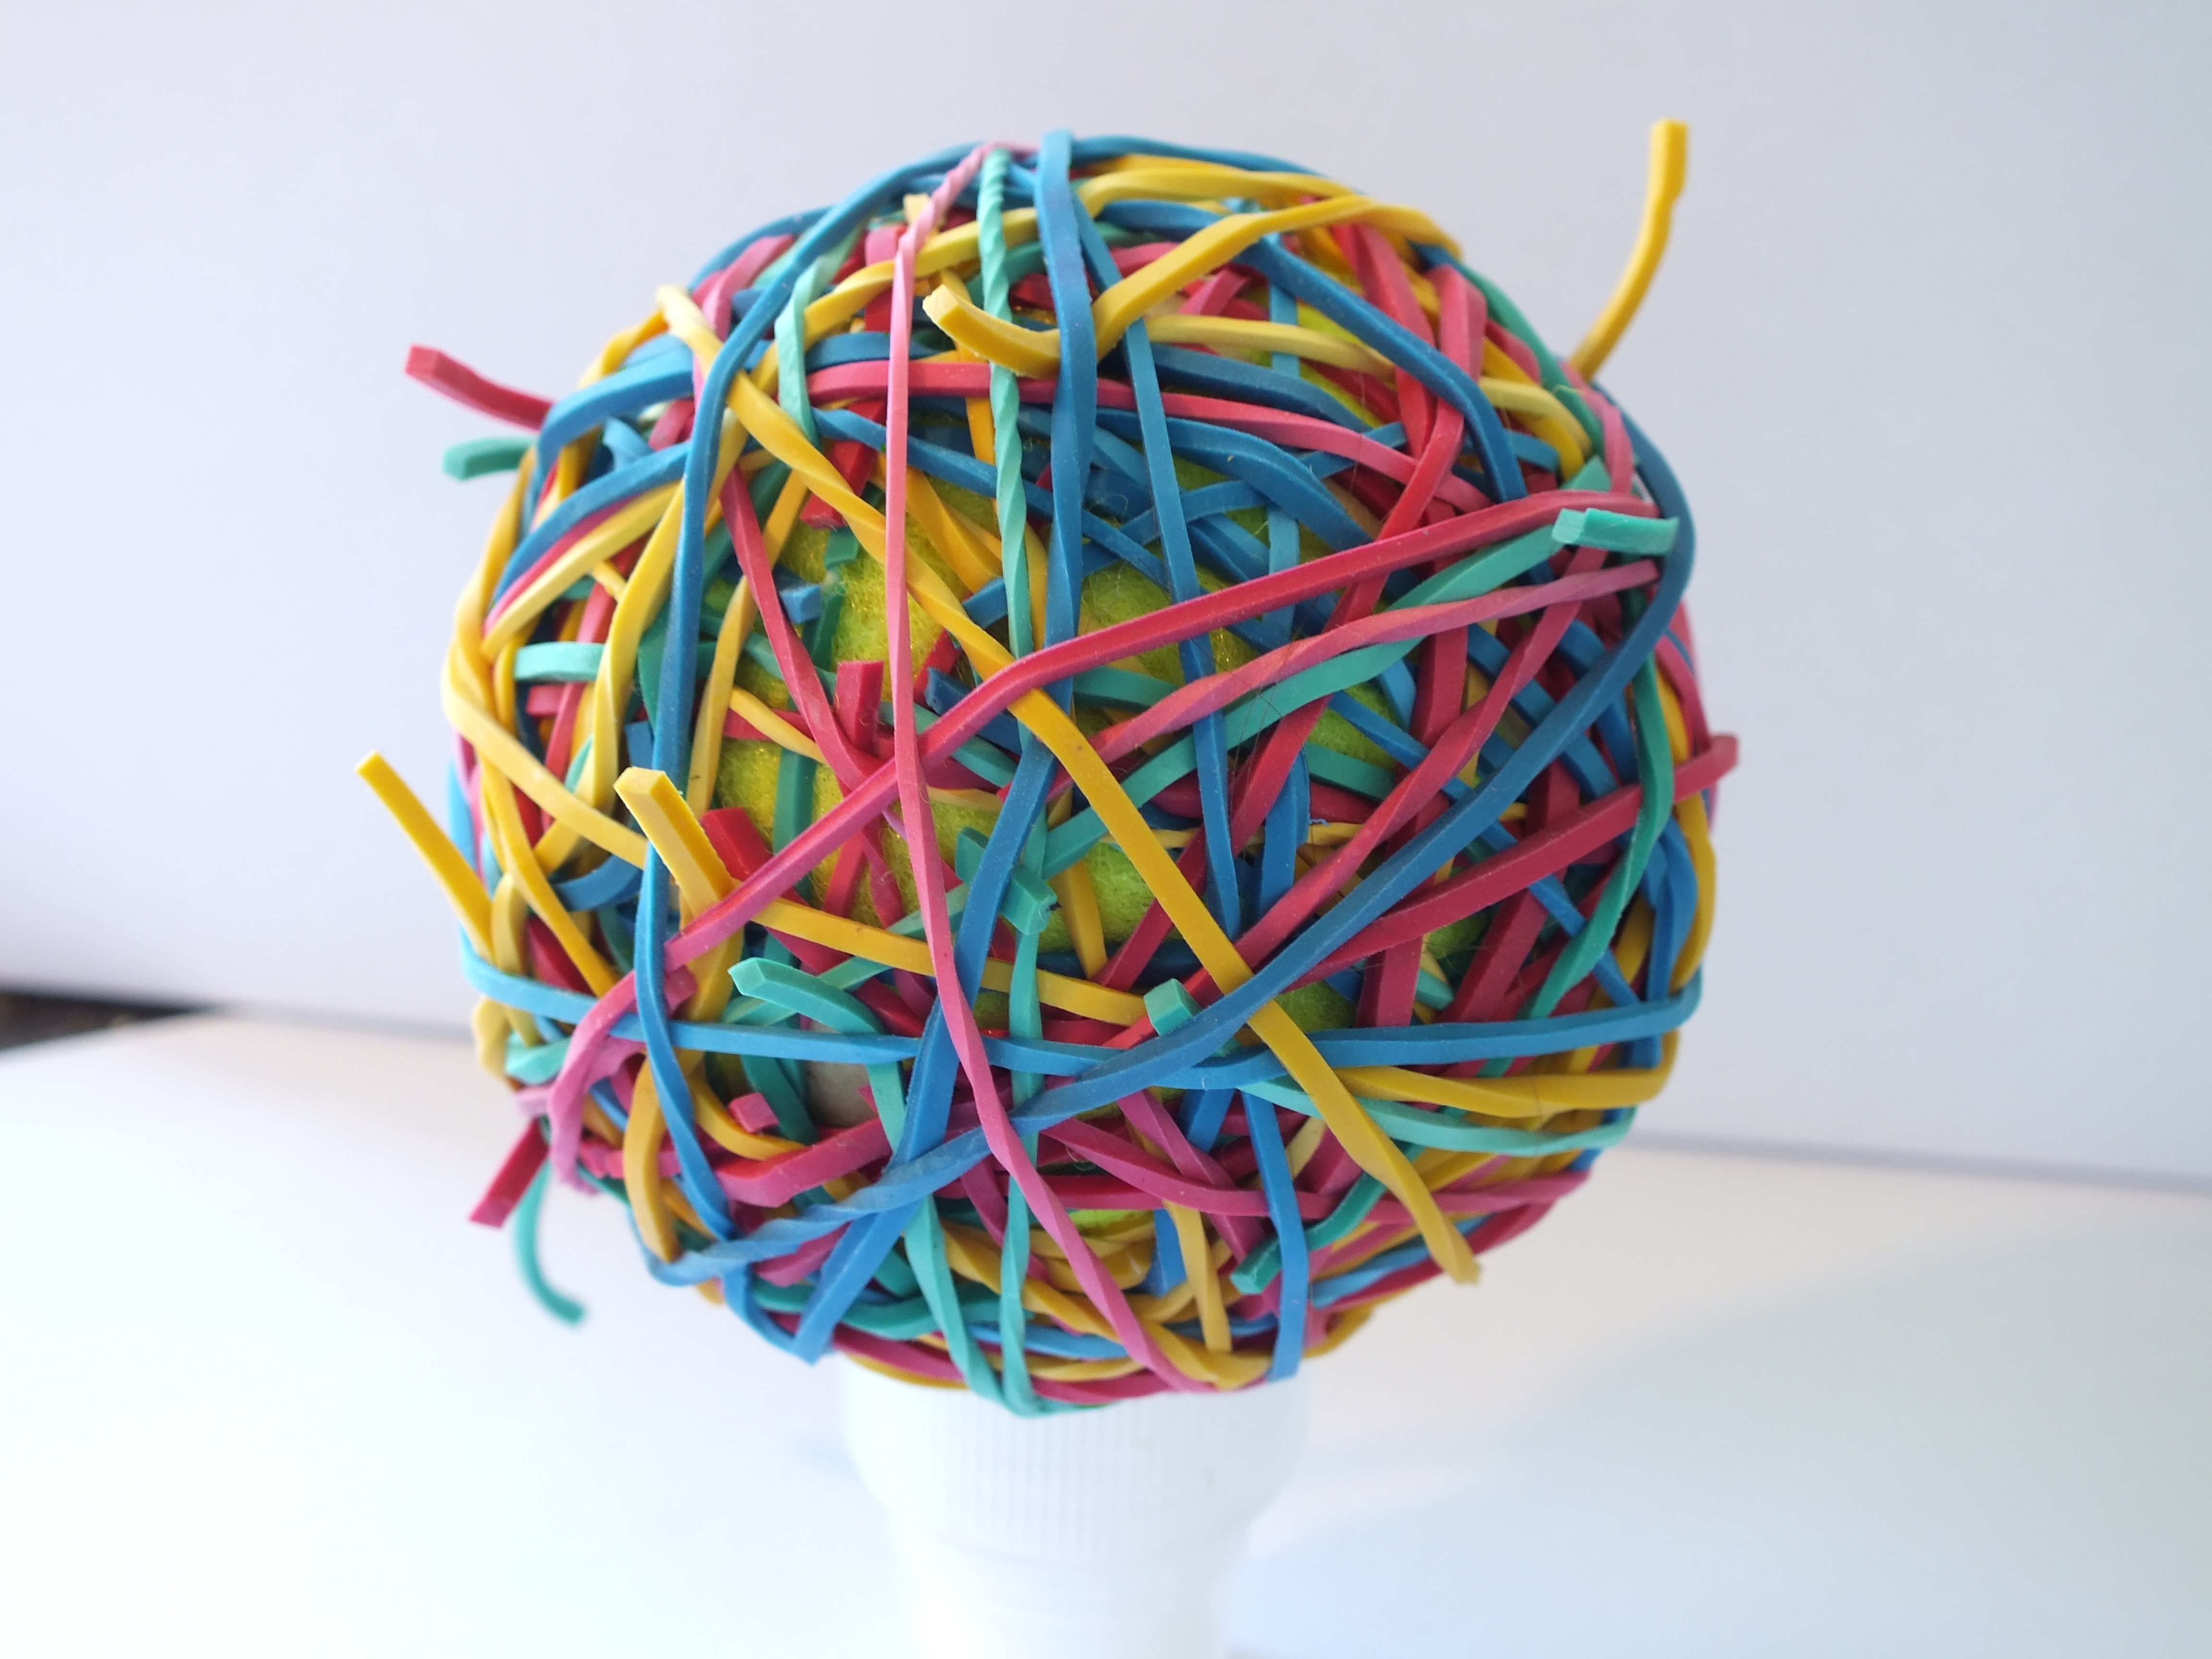 multicolored rubber band ball